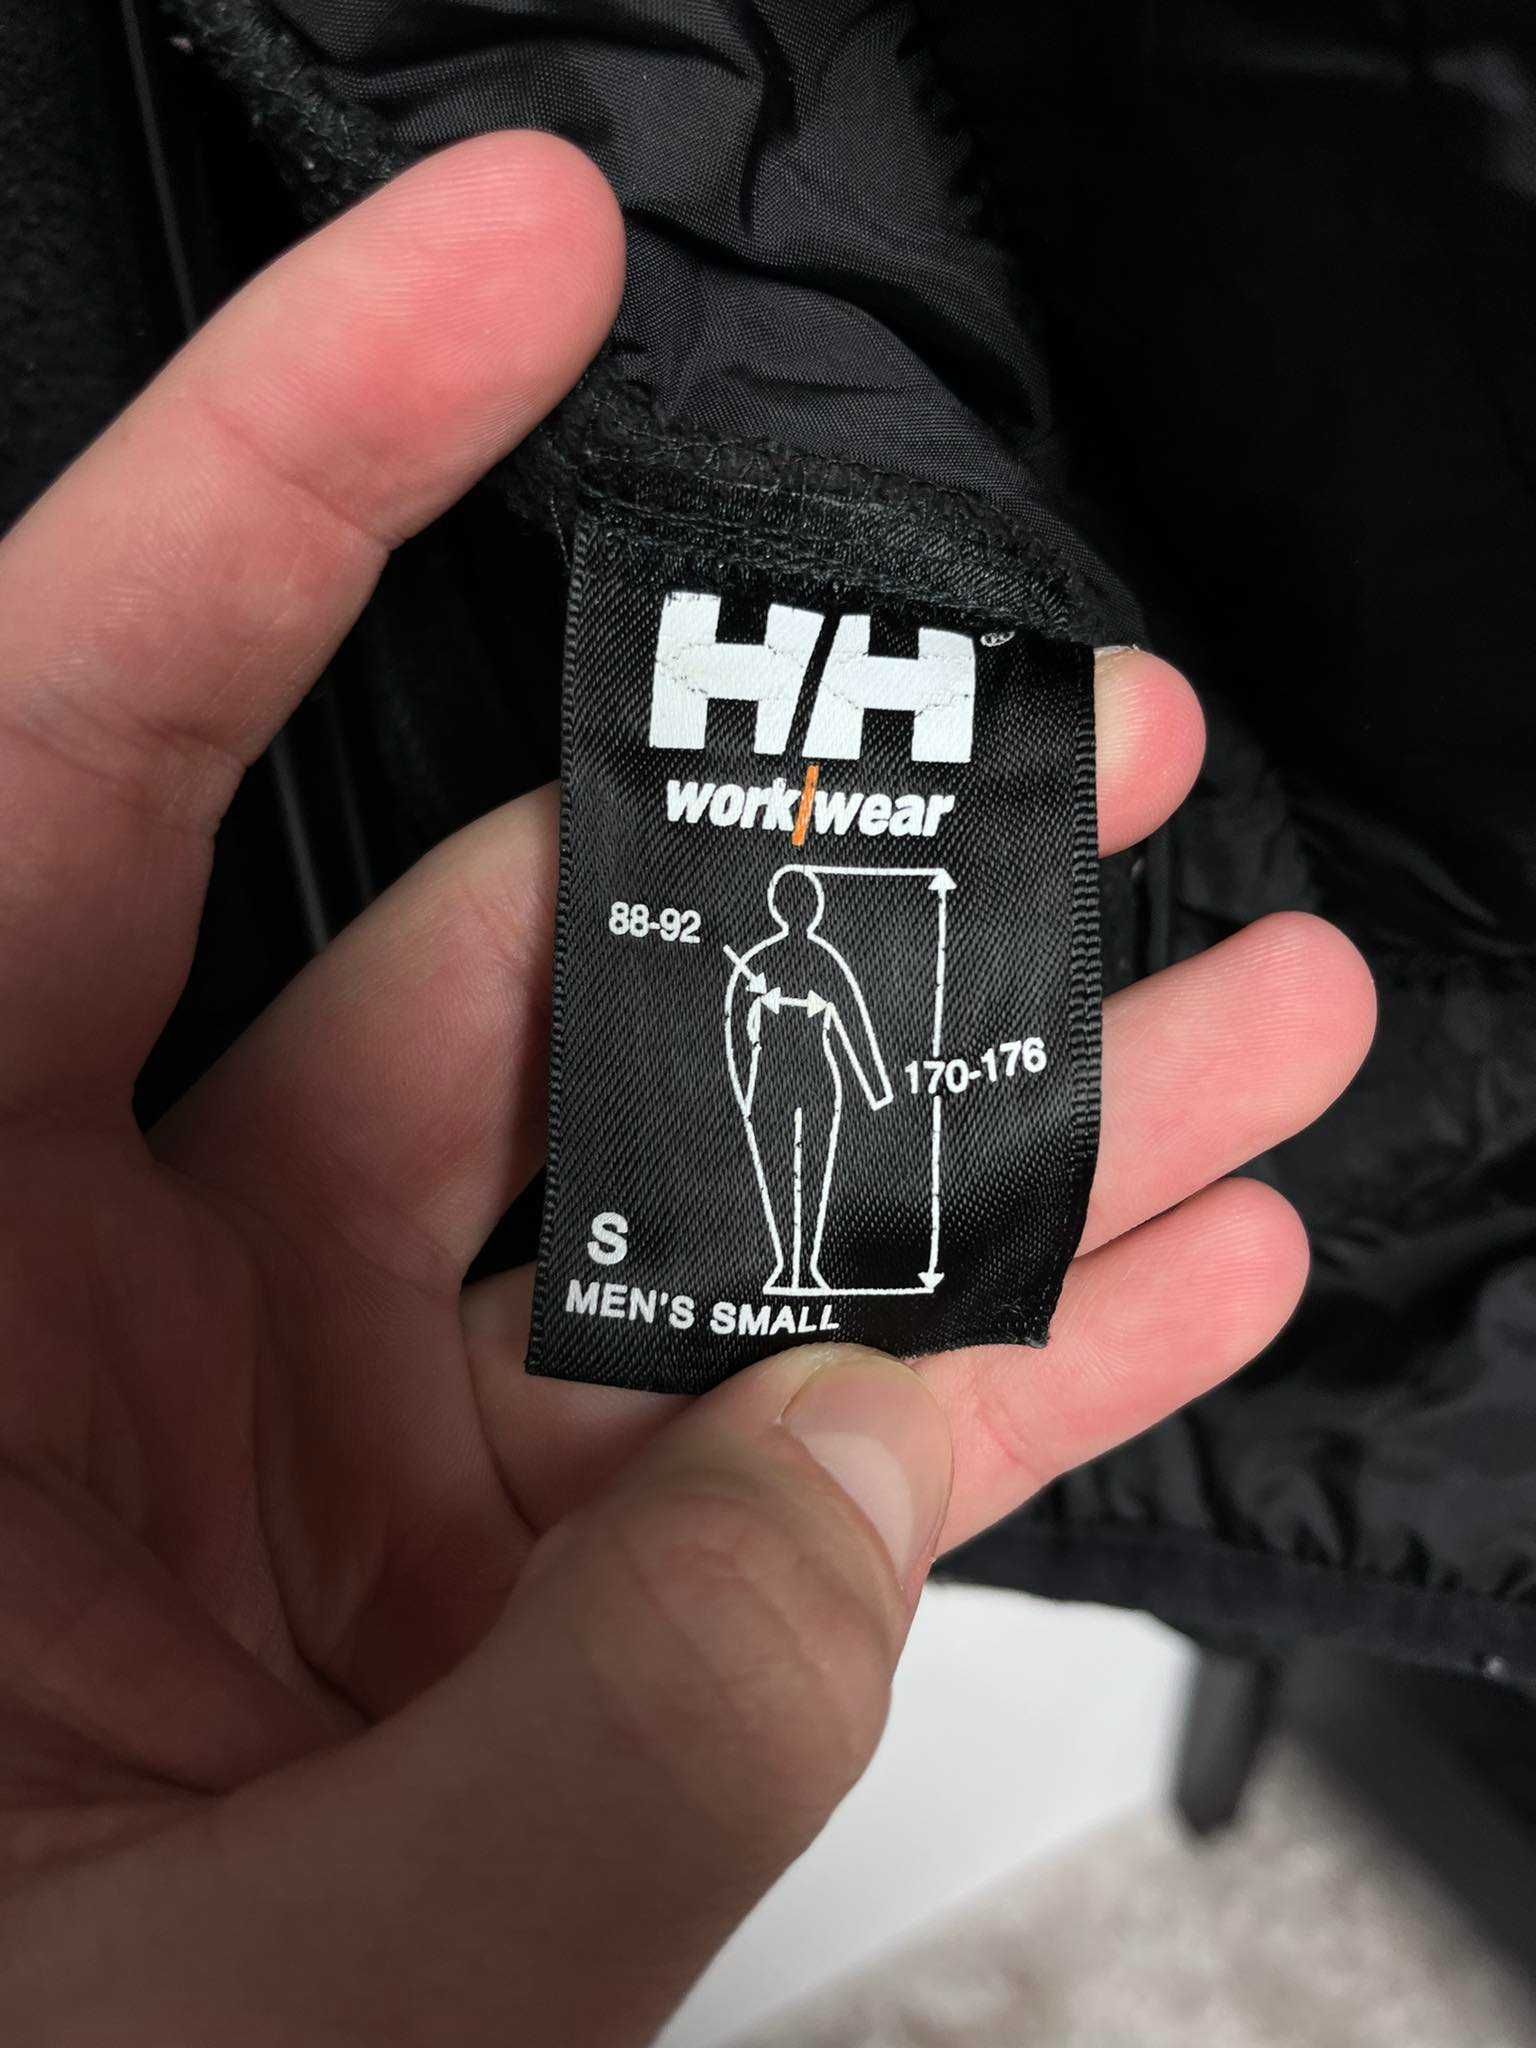 Gruby Polar bluza polarowa Helly Hansen robocza workwear męska czarna